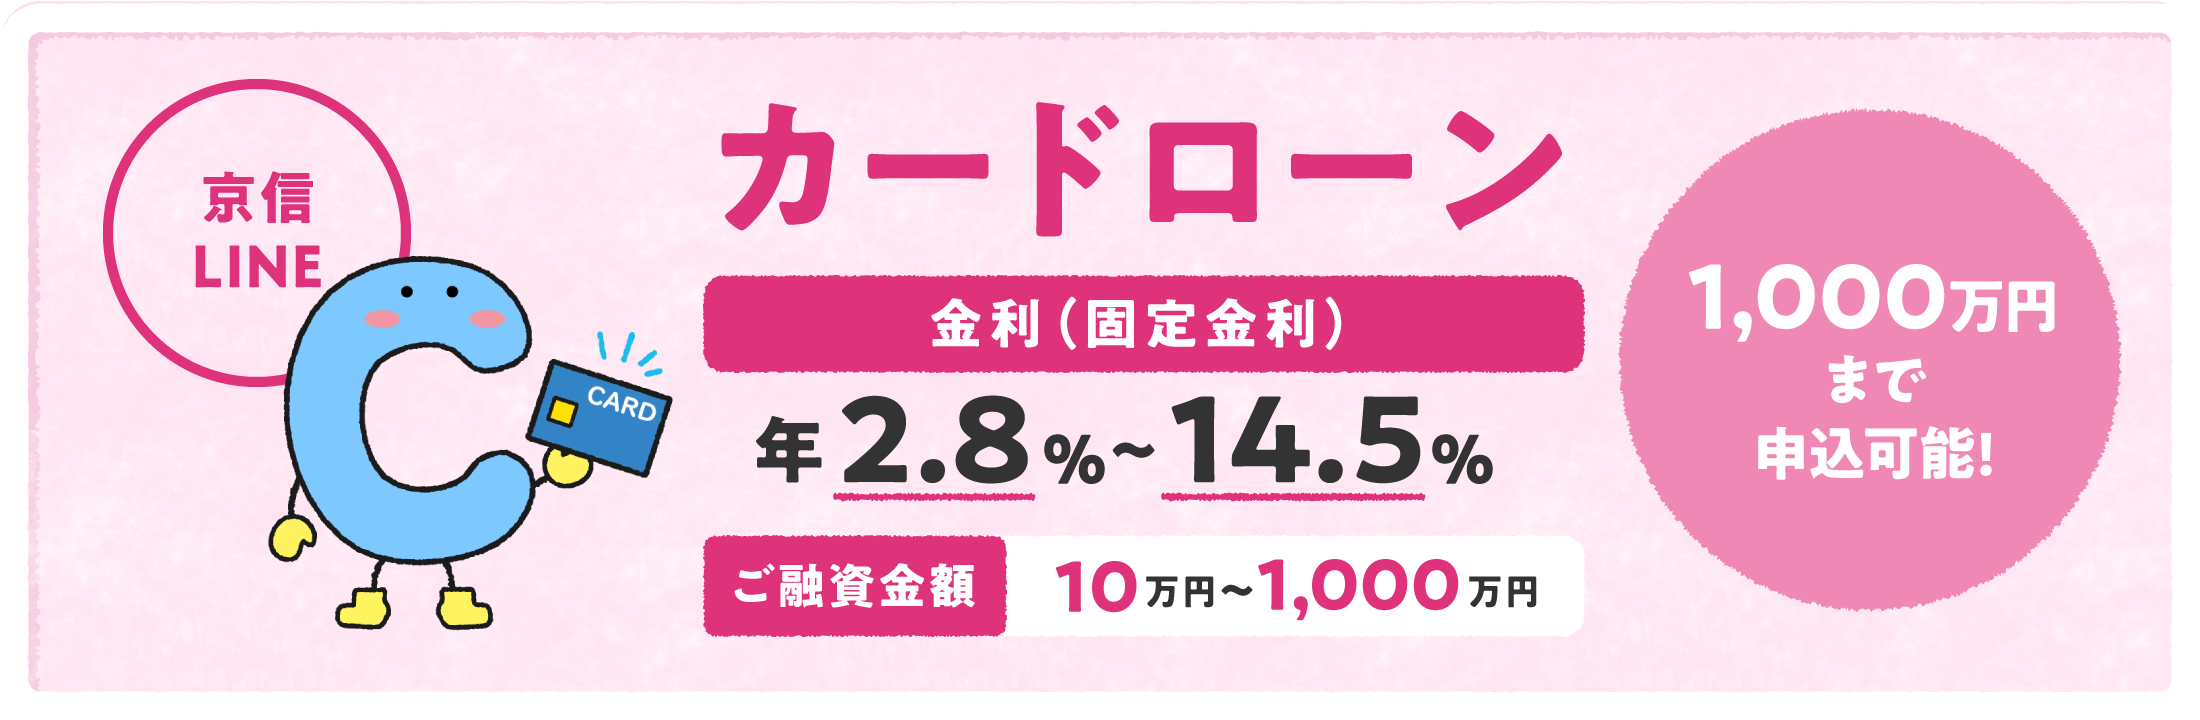 カードローン「京信LINE」 金利（固定金利）年2.8%〜14.5% ご融資金額10万円〜1,000万円 1,000万円まで申込可能！